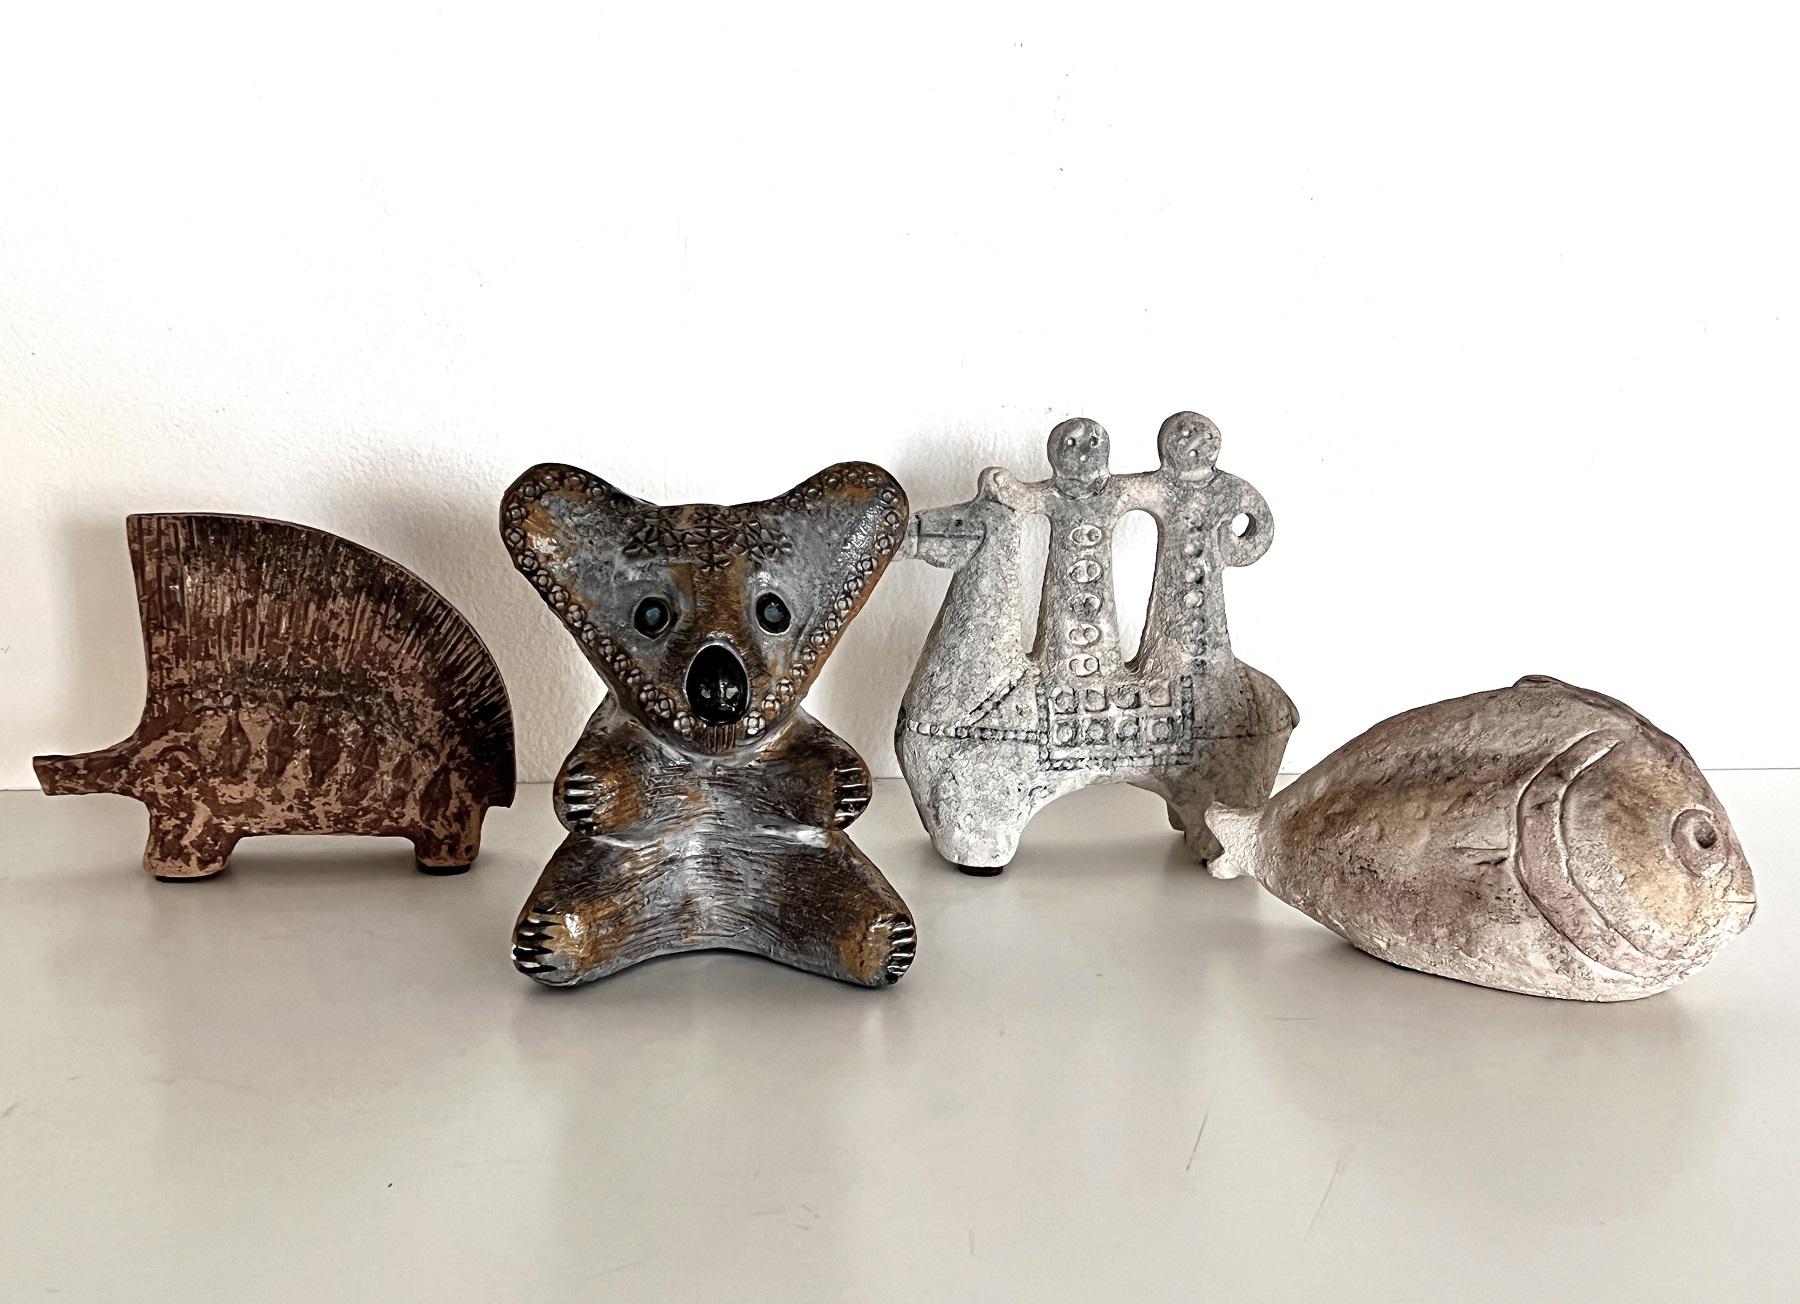 Un magnifique ours Koala dessiné par Aldo Londi en forme de boîte d'épargne. 
Le Koala est fabriqué en céramique lourde - poterie, conçue par Aldo Londi dans les années 1960, et produite par Bitossi Italie.
Aucun défaut visible.
Pièce rare, objet de